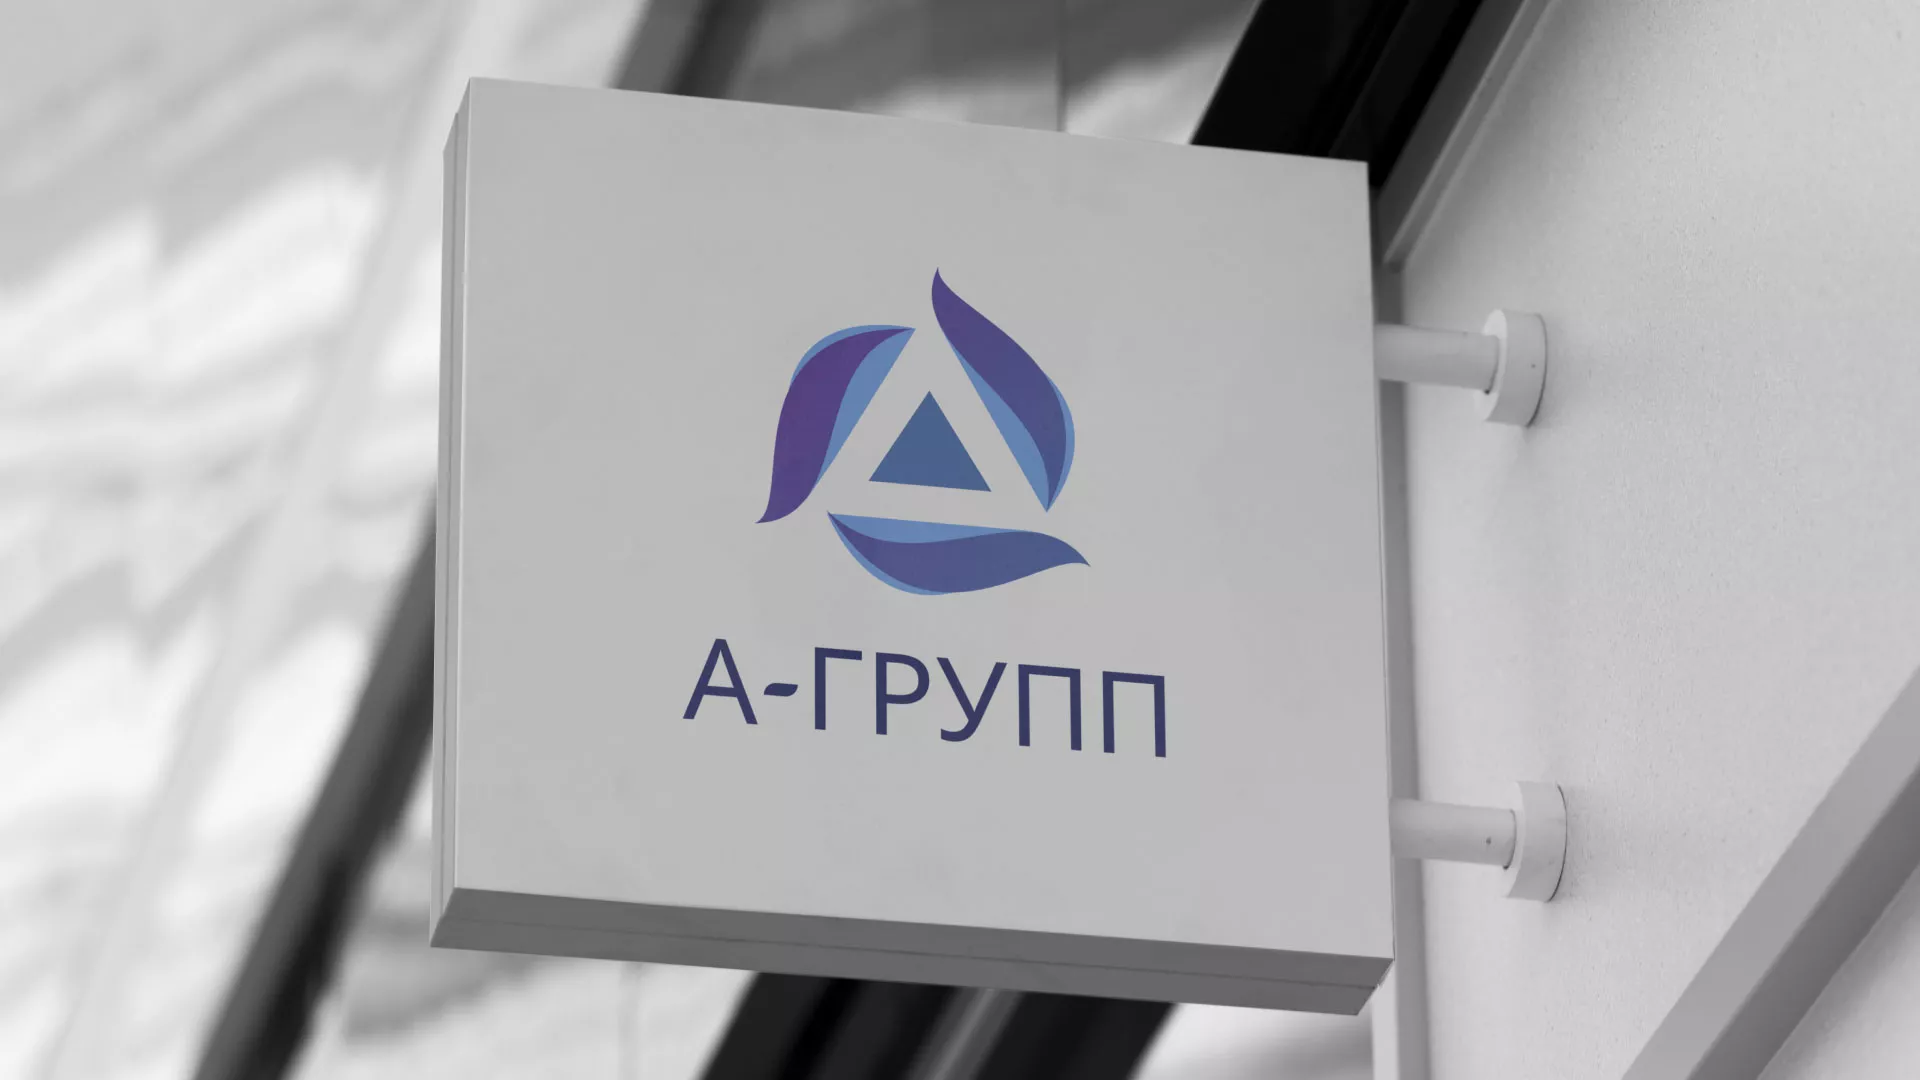 Создание логотипа компании «А-ГРУПП» в Усть-Джегуте